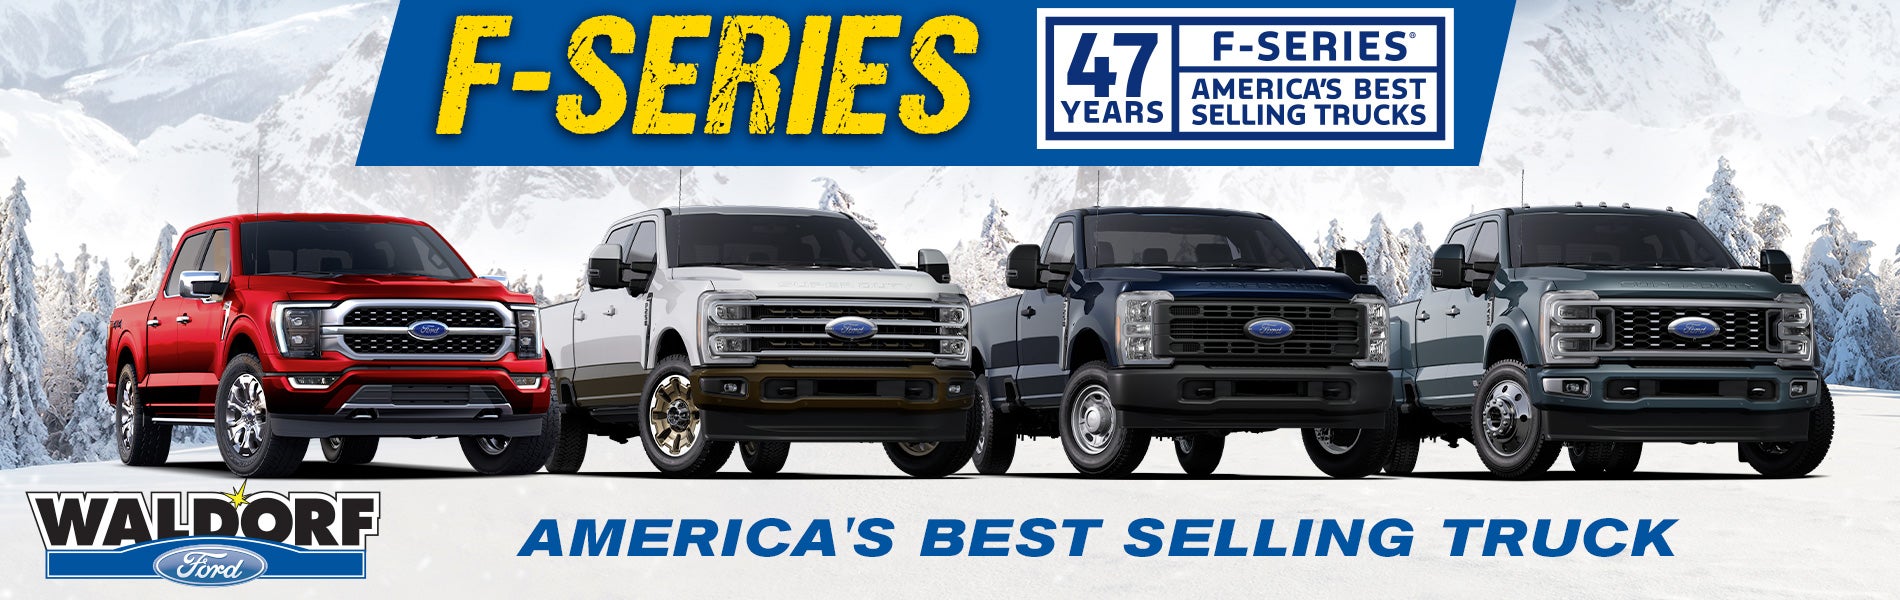 47 Years of F-Series Trucks